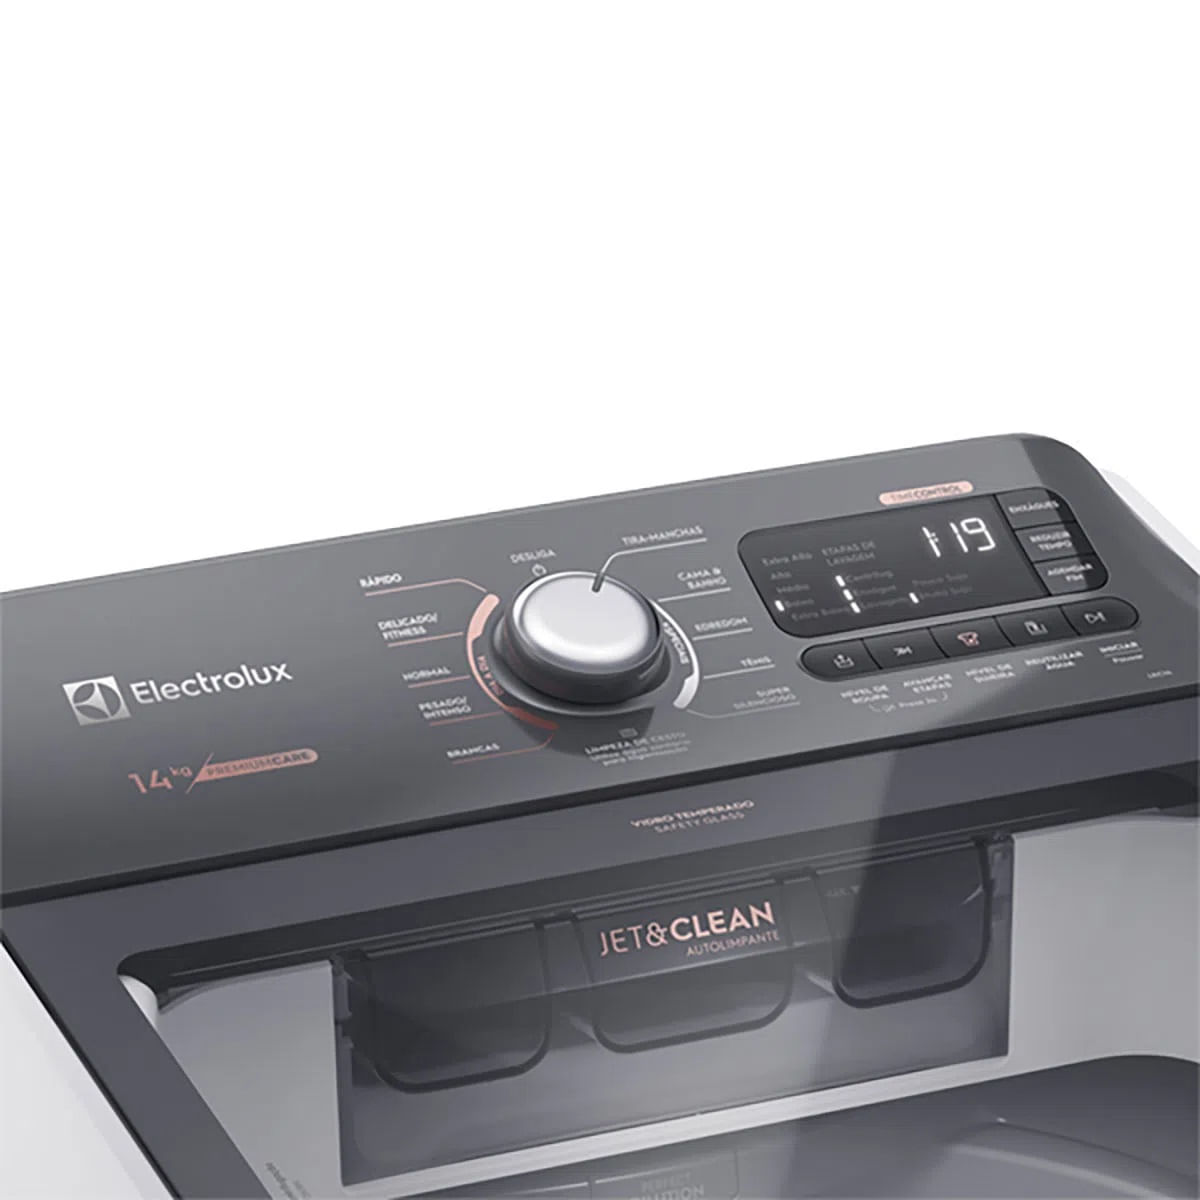 maquina-de-lavar-14kg-electrolux-premium-care-com-cesto-inox-jet-clean-e-time-control-lec14-220v-3.jpg